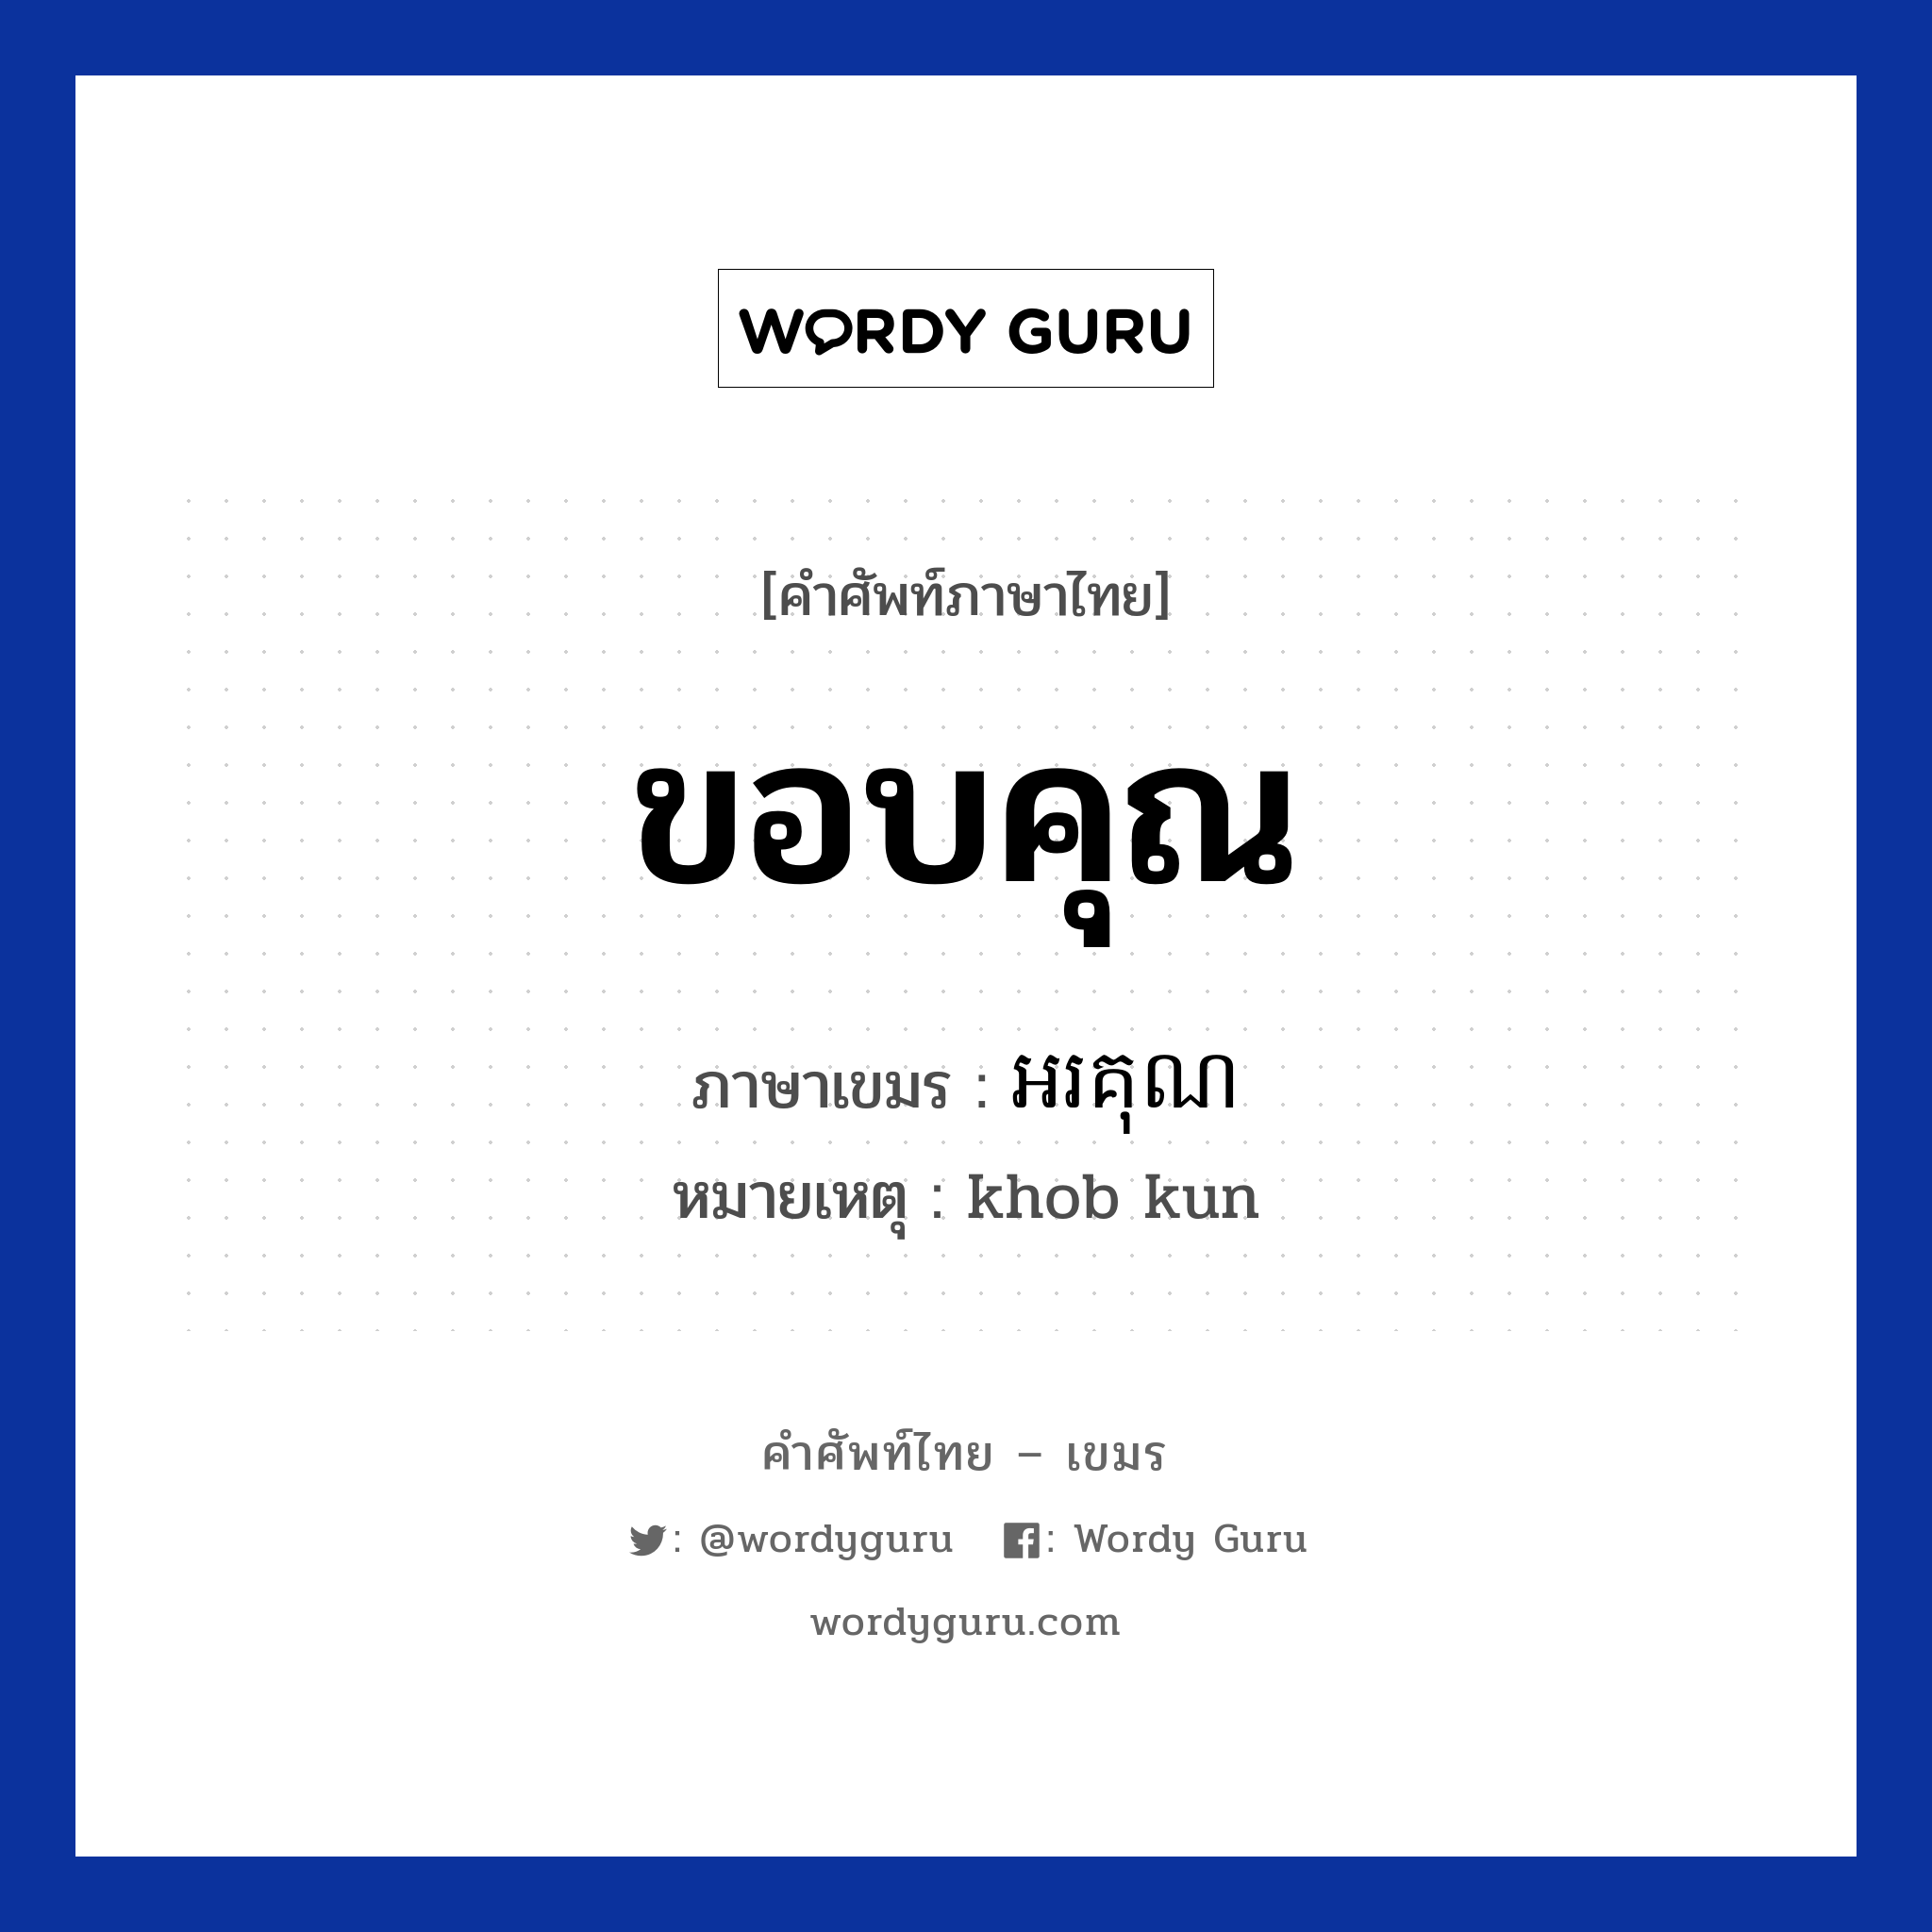 អរគុណ ภาษาไทย?, คำศัพท์ภาษาไทย - เขมร អរគុណ ภาษาเขมร ขอบคุณ หมวด ทักทาย หมายเหตุ khob kun Orkun หมวด ทักทาย